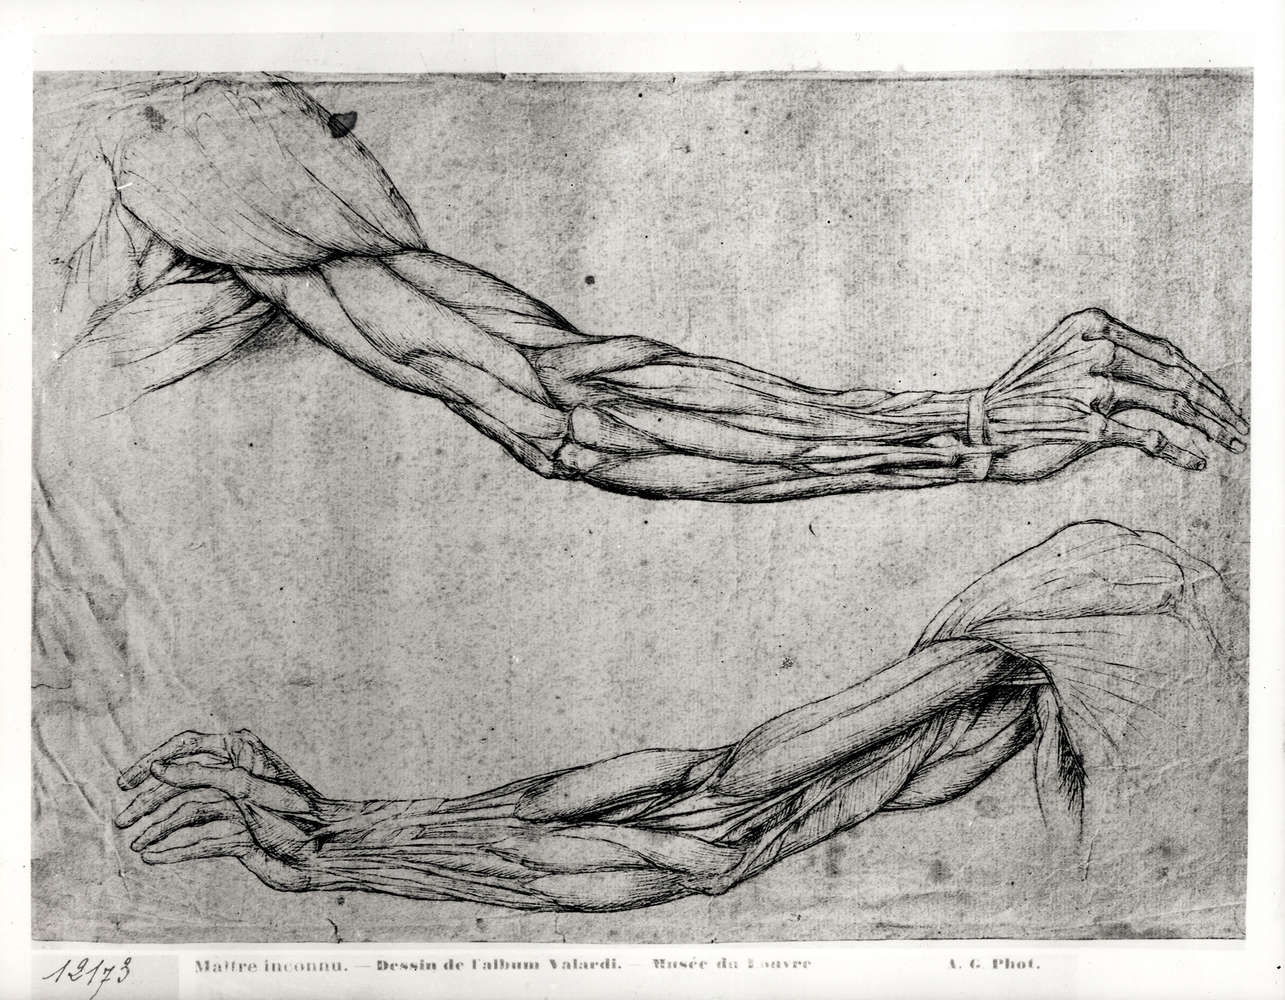             Papier peint "Étude des armes" de Léonard de Vinci
        